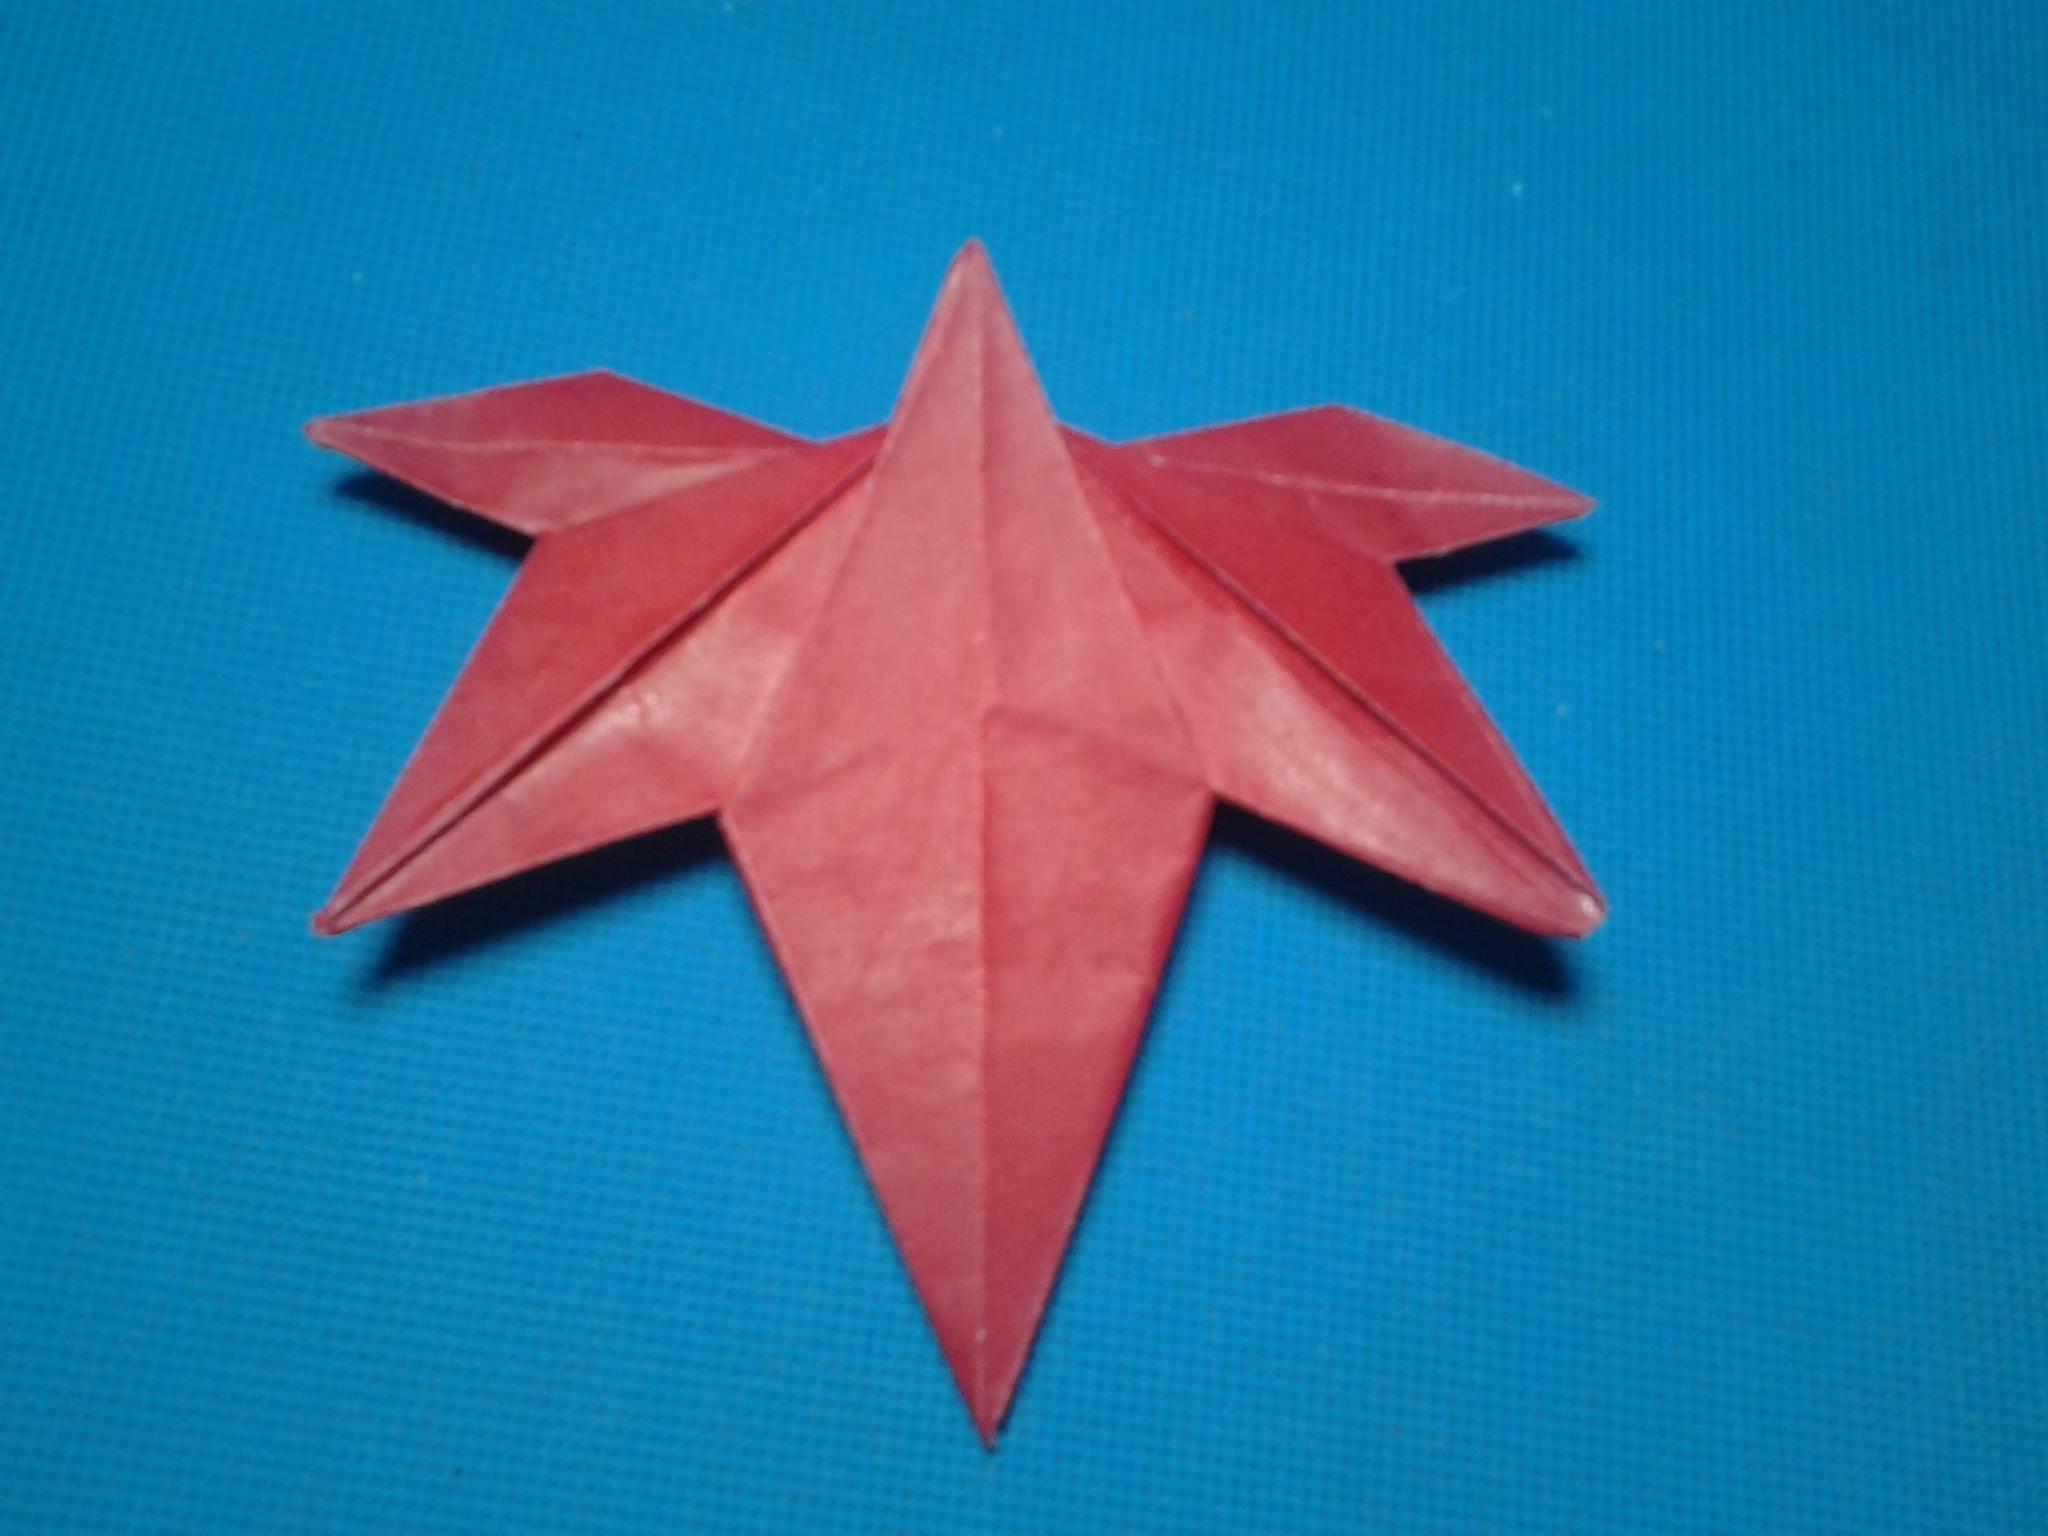 神谷哲史的枫叶 折纸视频教程 (上)折纸王子教你折枫叶 第三款-折纸